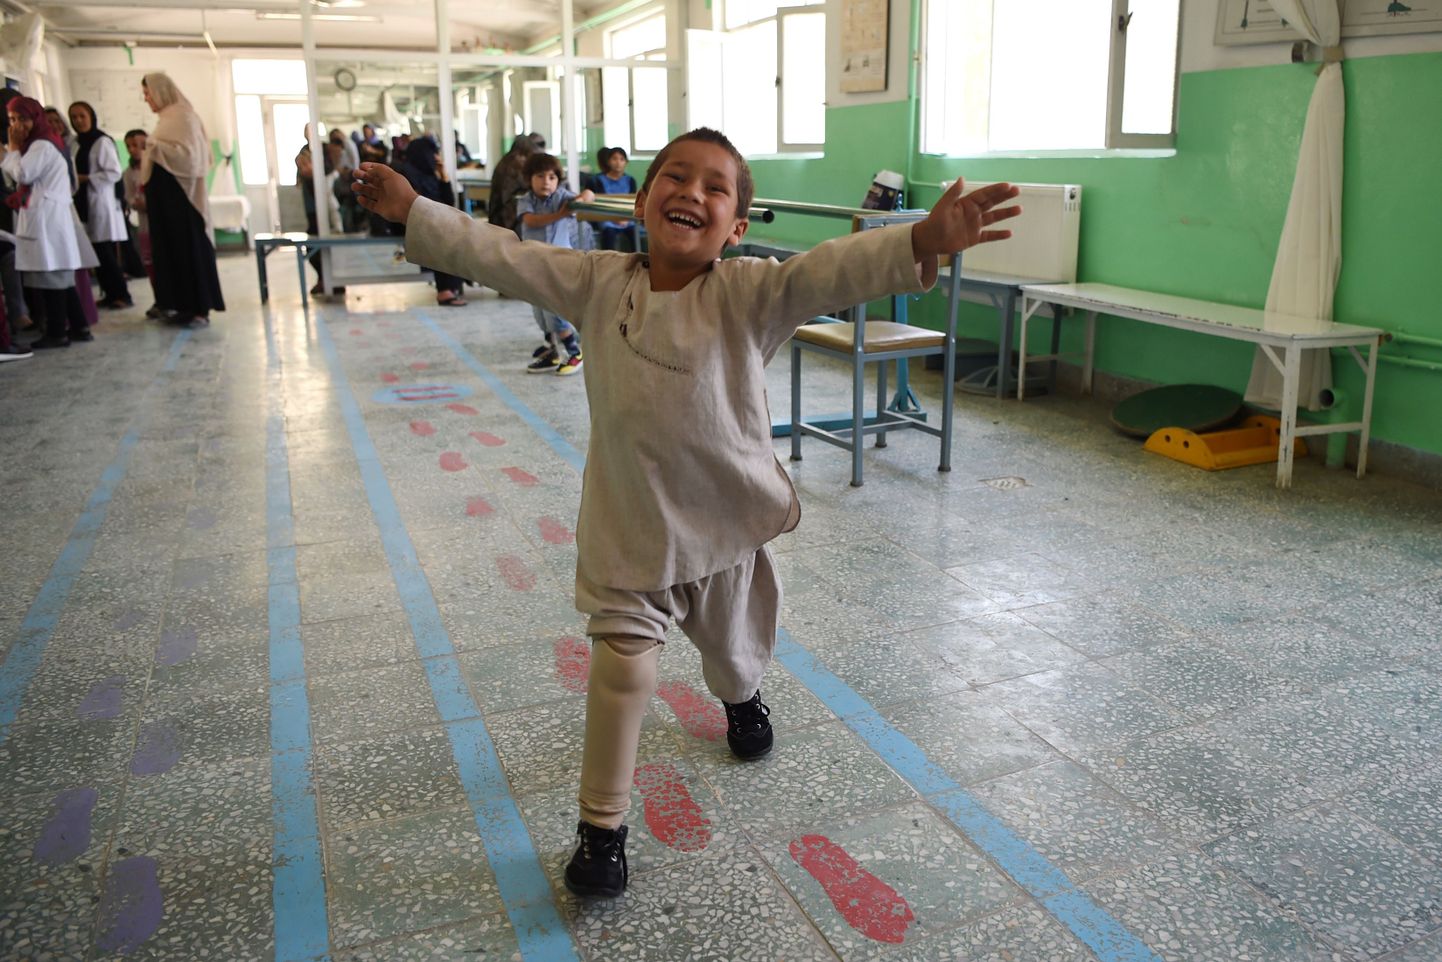 Viieaastane Ahmad Sayed Rahman kaotas jala olles vaid kaheksa kuu vanune. Täna tunneb ta suurt rõõmu jalaproteesist, mis võimaldab tal hoogsal sammul tantsu vihtuda.